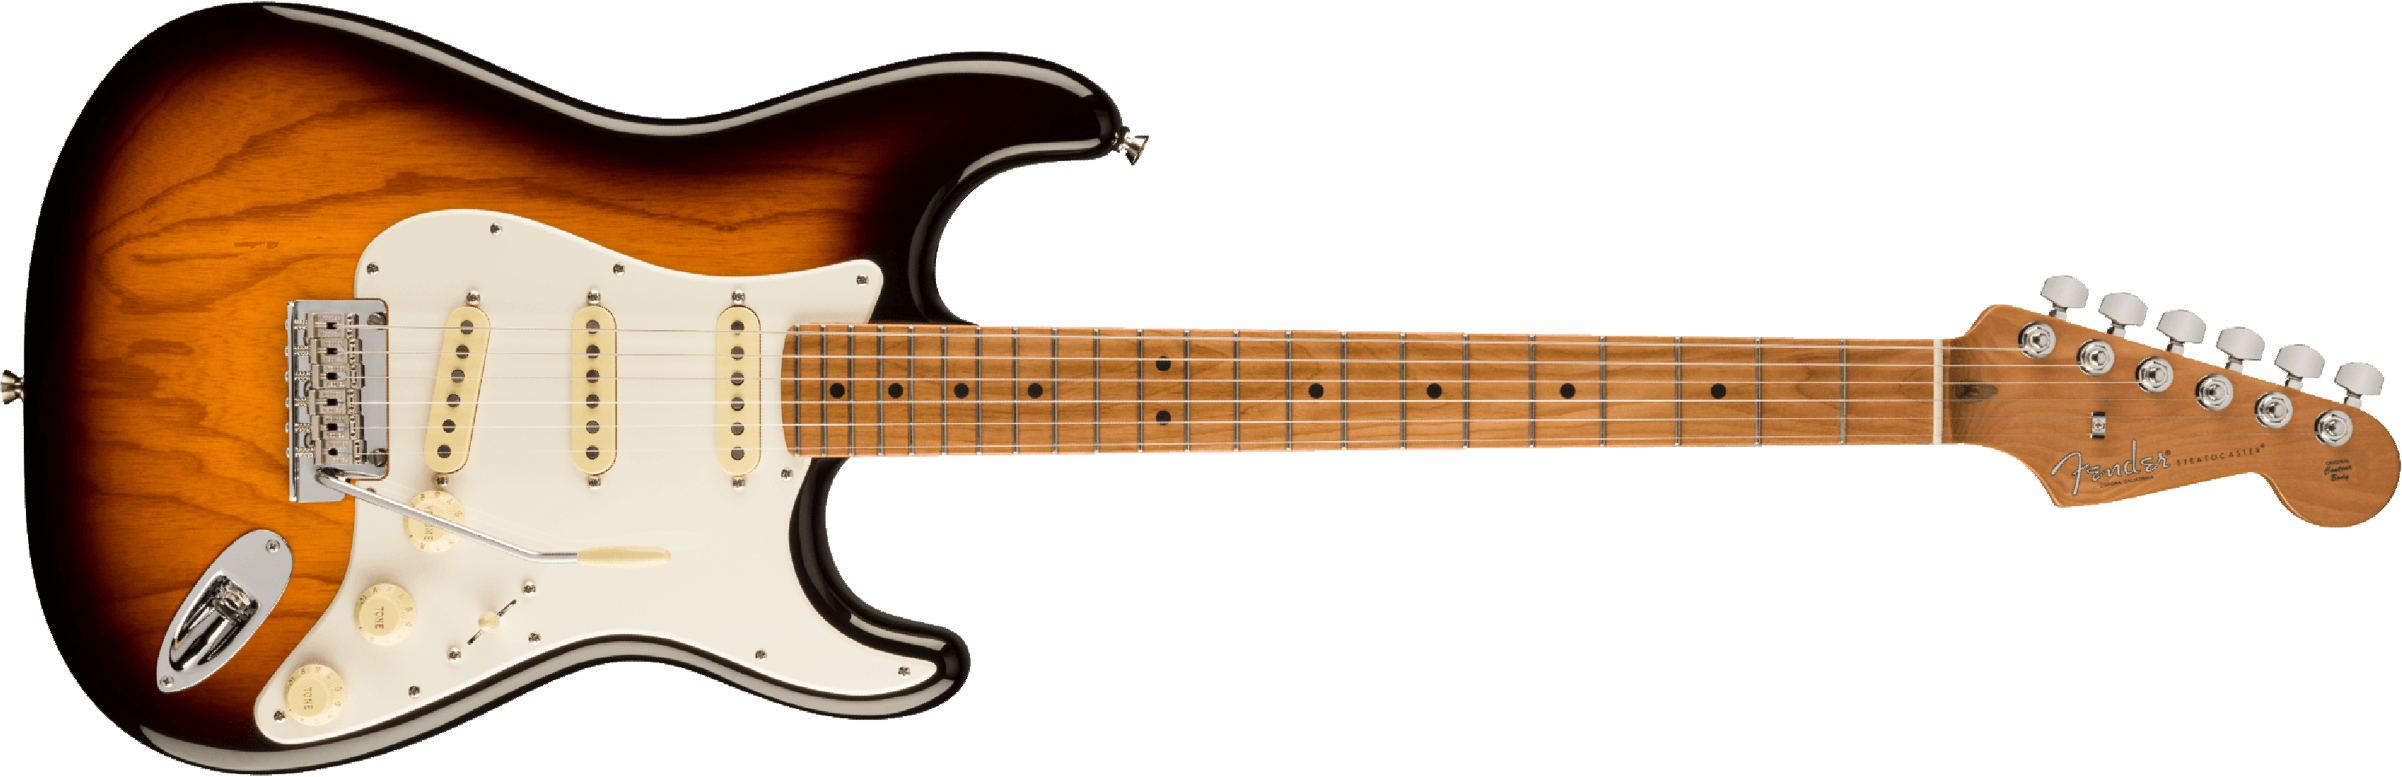 Fender Strat American Pro Ii Ltd 3s Custom Shop Trem Mn - 2-color Sunburst - Guitare Électrique Forme Str - Main picture